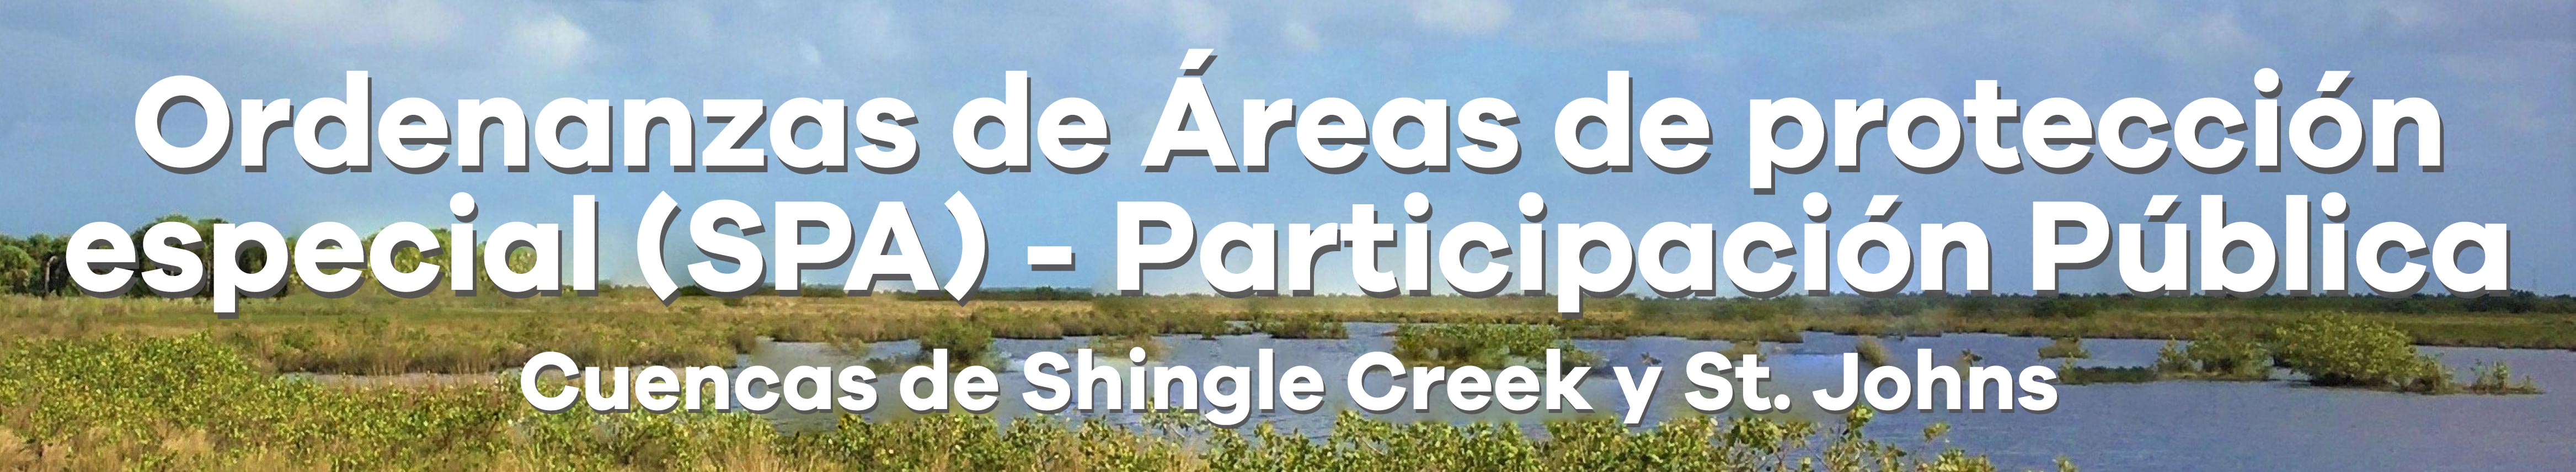 Ordenanzas de Áreas de Protección Especial - Participación pública Shingle Creek y río St. Johns